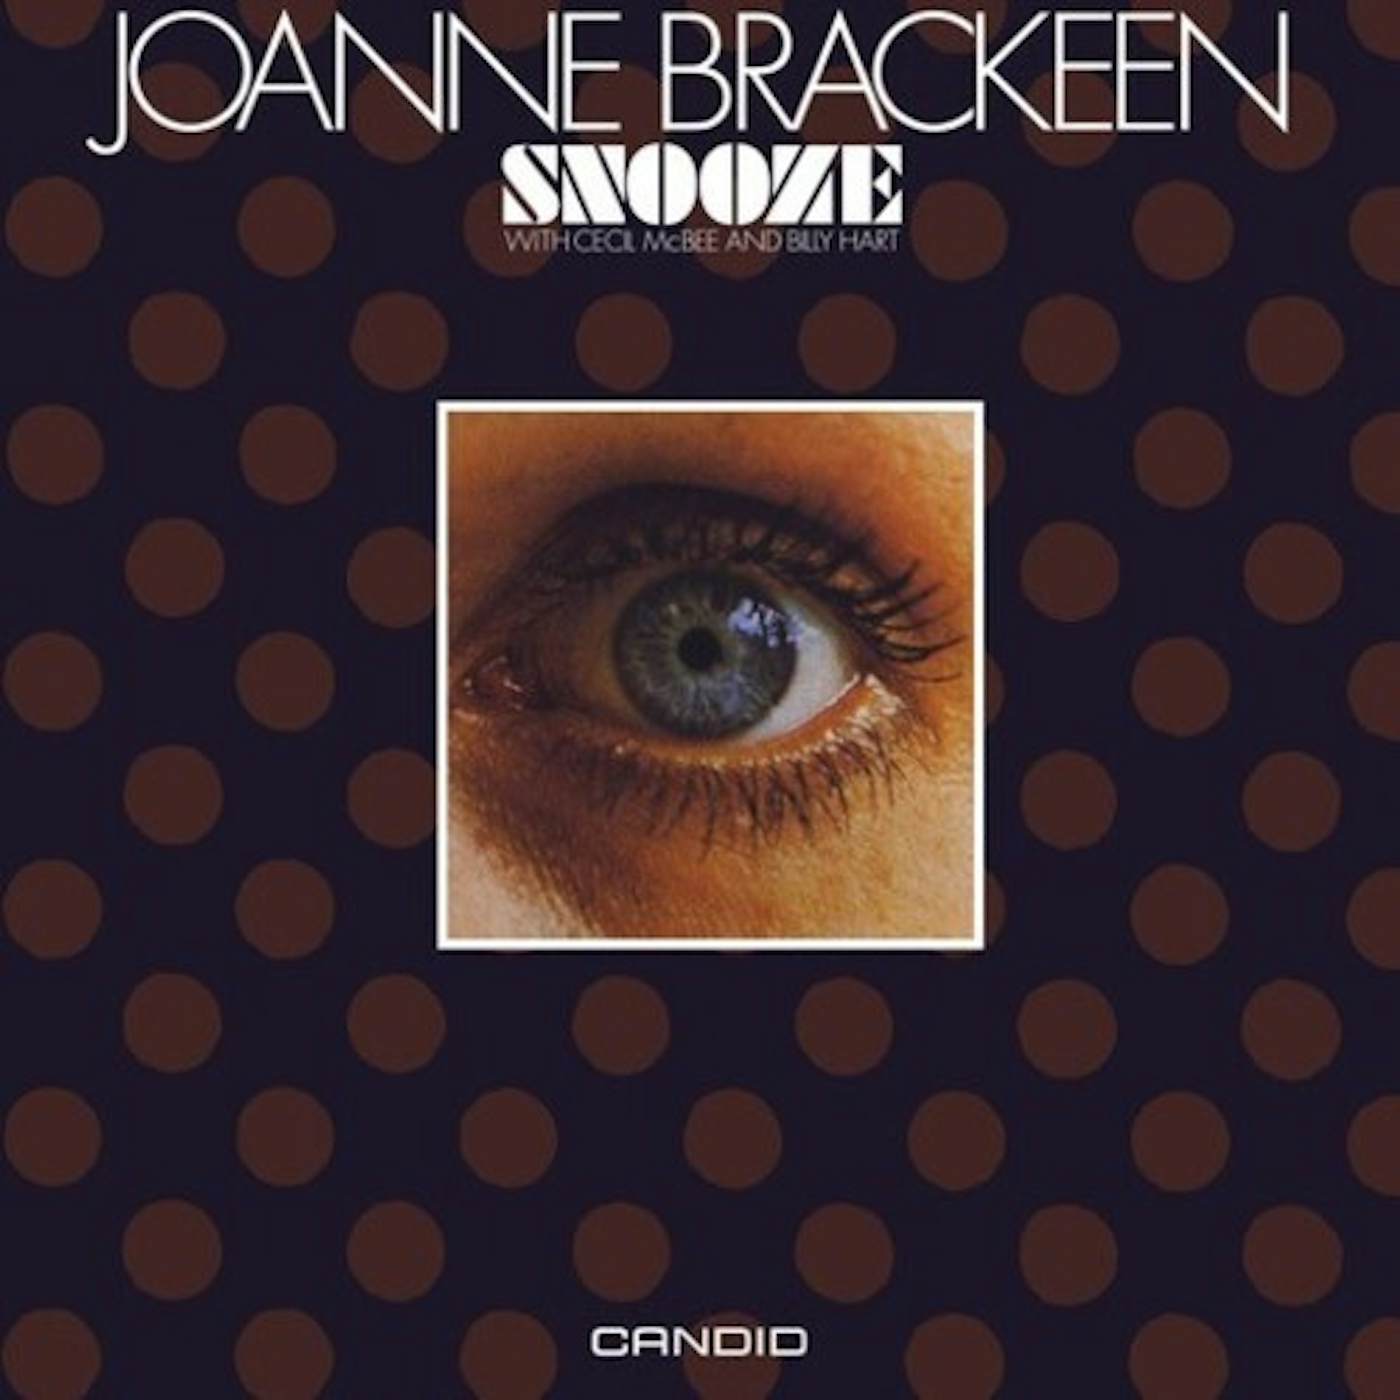 Joanne Brackeen SNOOZE CD